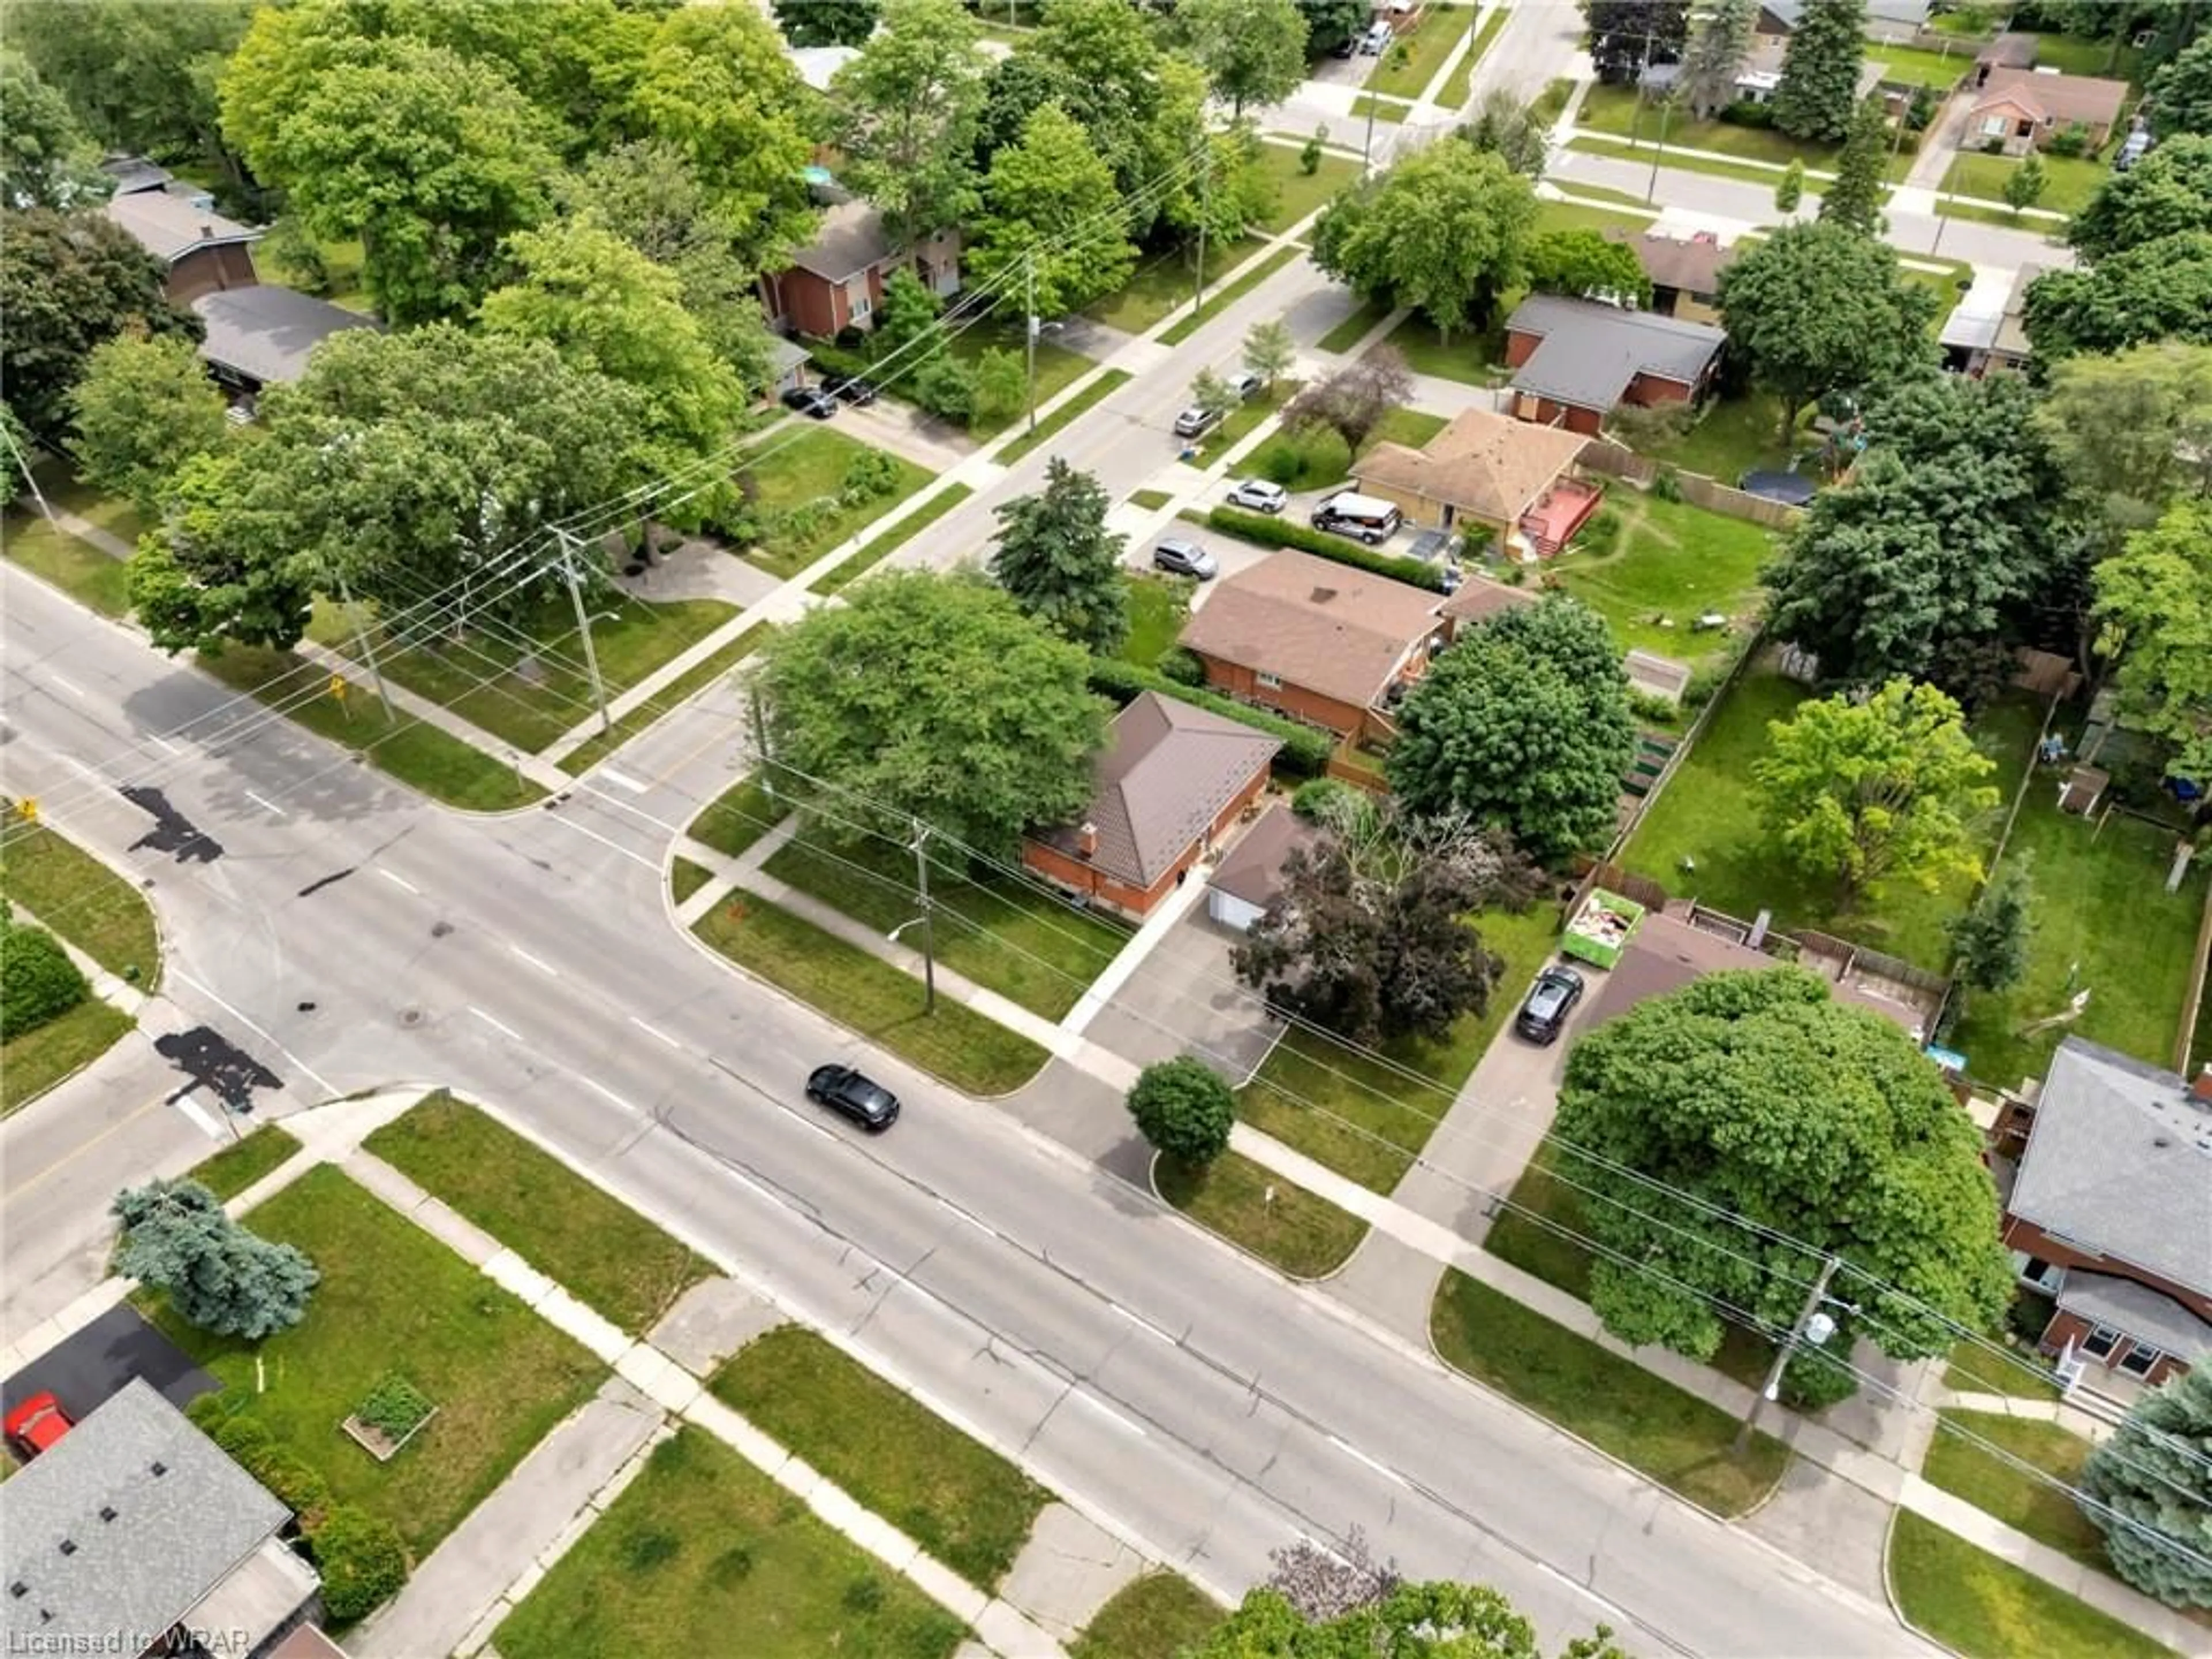 A view of a street for 59 Ellis Cres, Waterloo Ontario N2J 2B5